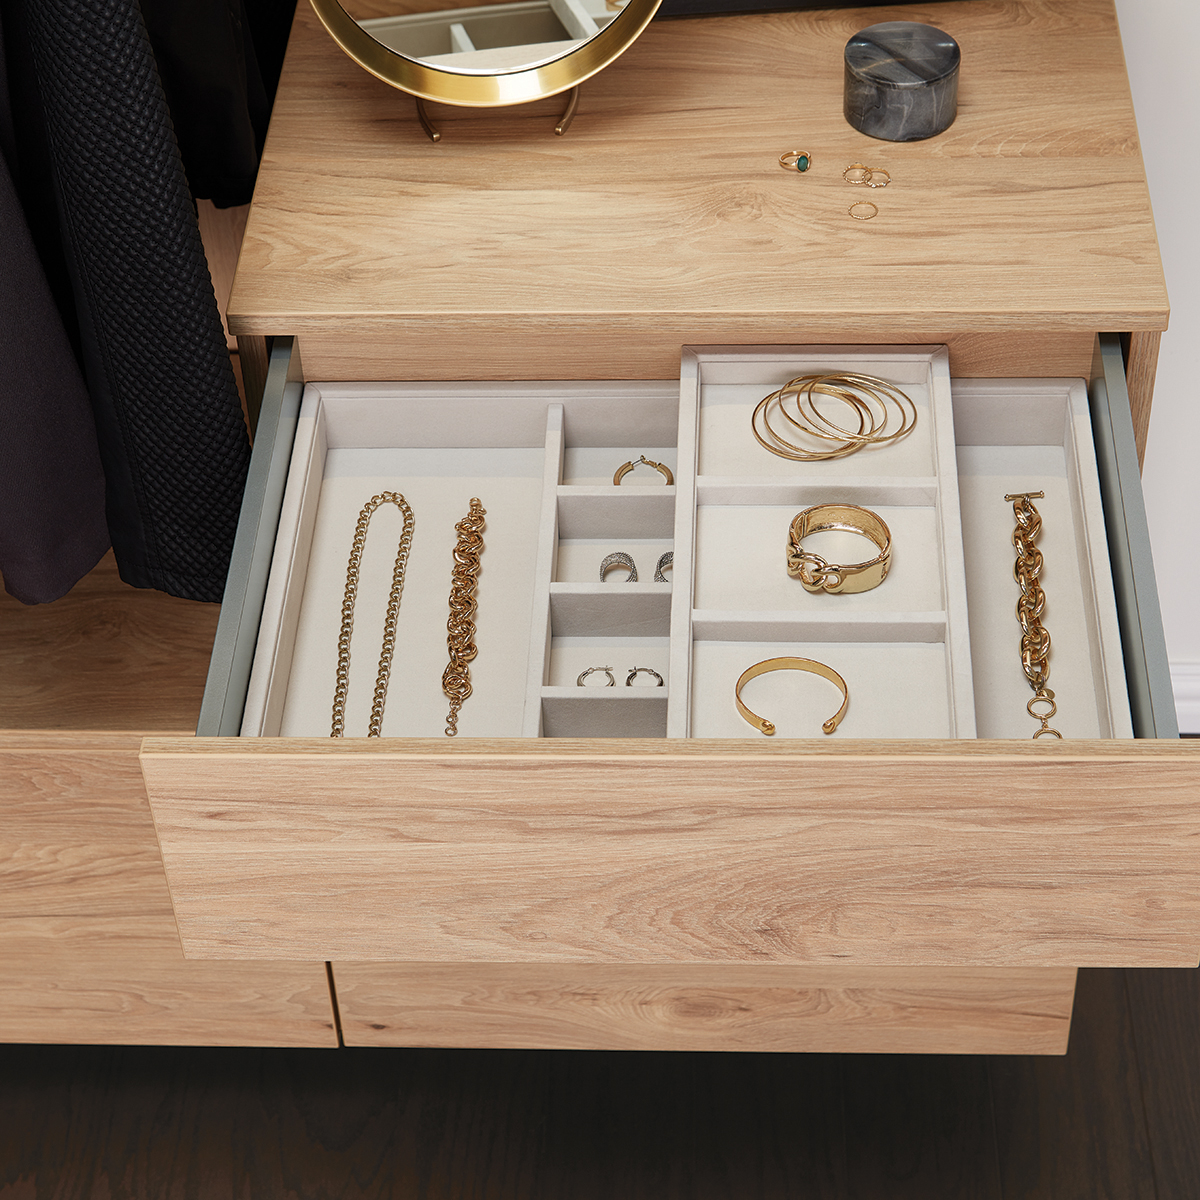 Jewelry storage tray